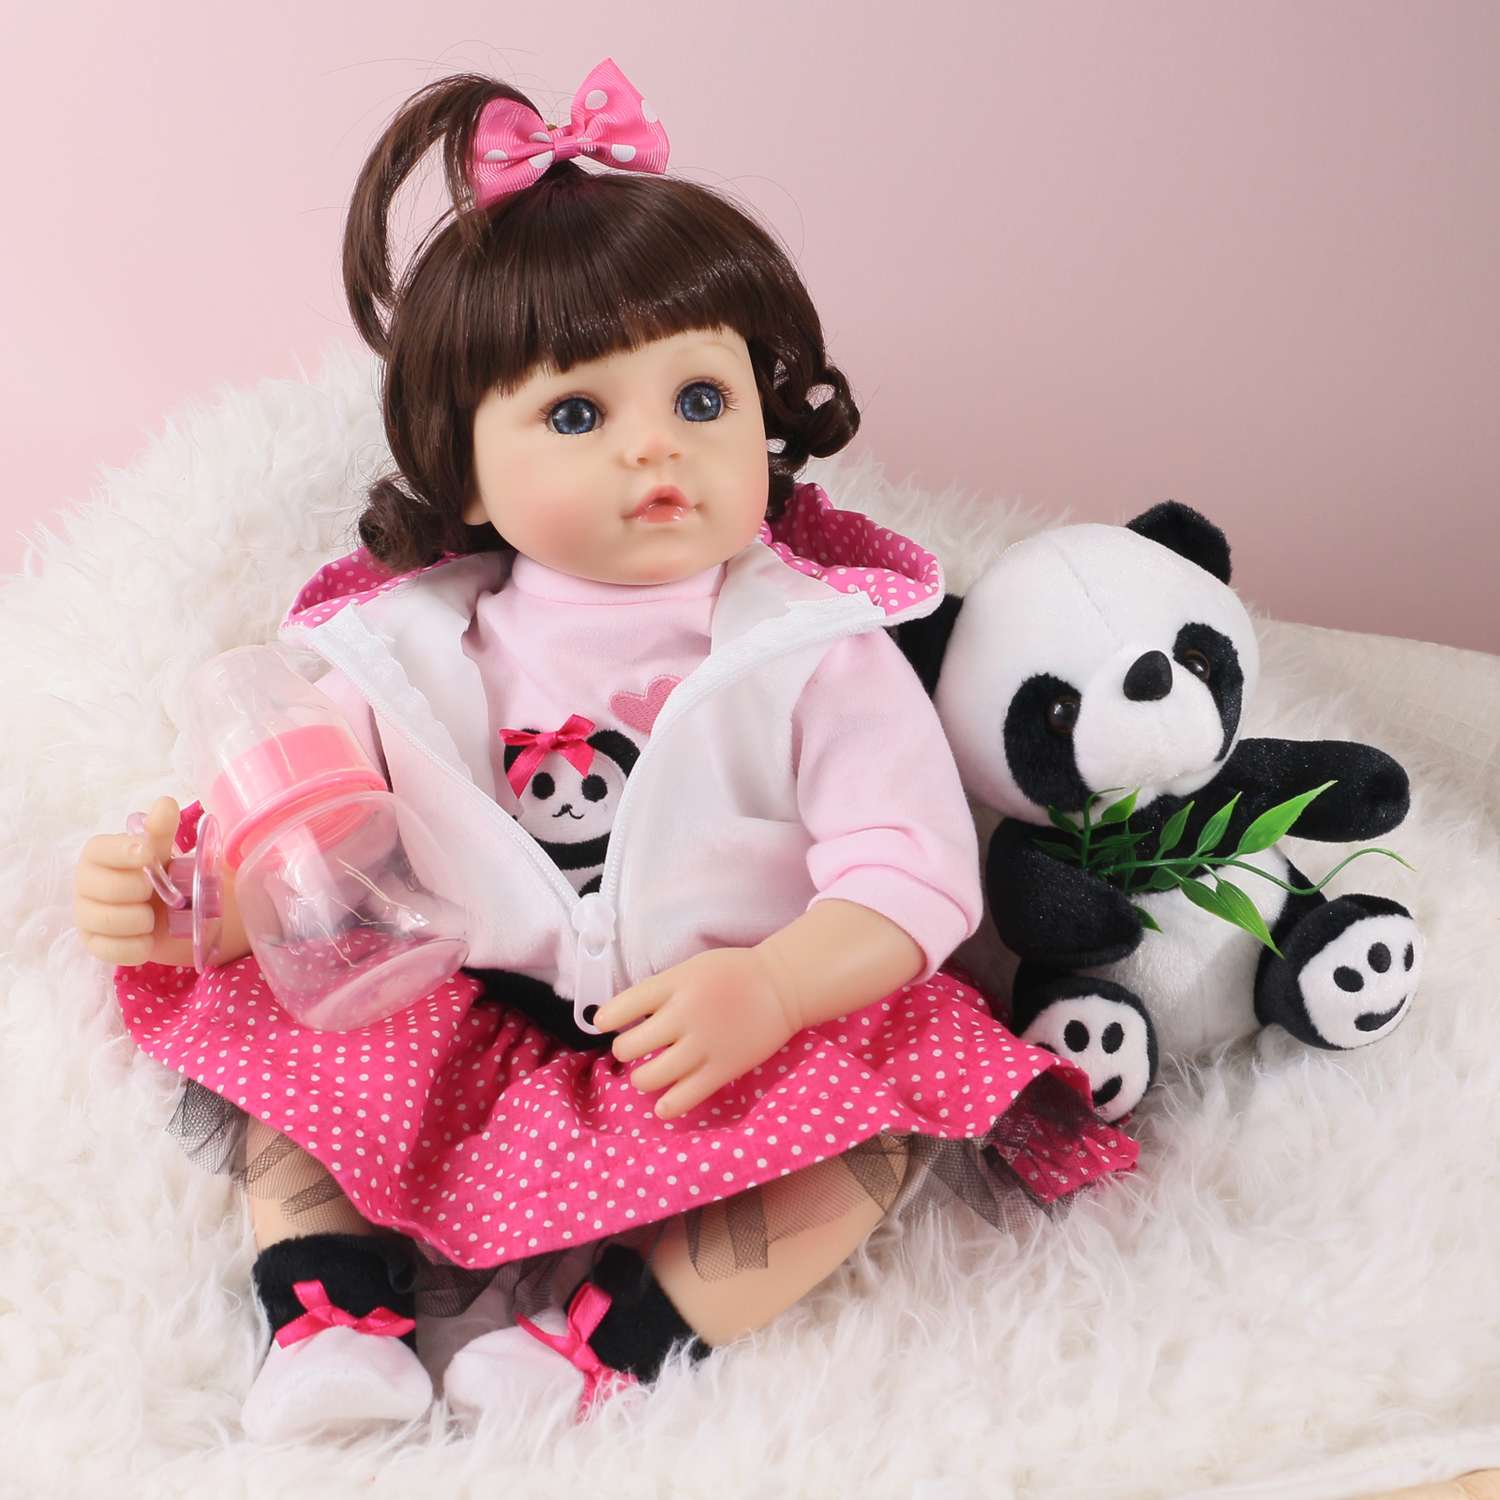 Кукла Реборн QA BABY Алина девочка большая пупс набор игрушки для девочки 42 см 45003 - фото 6